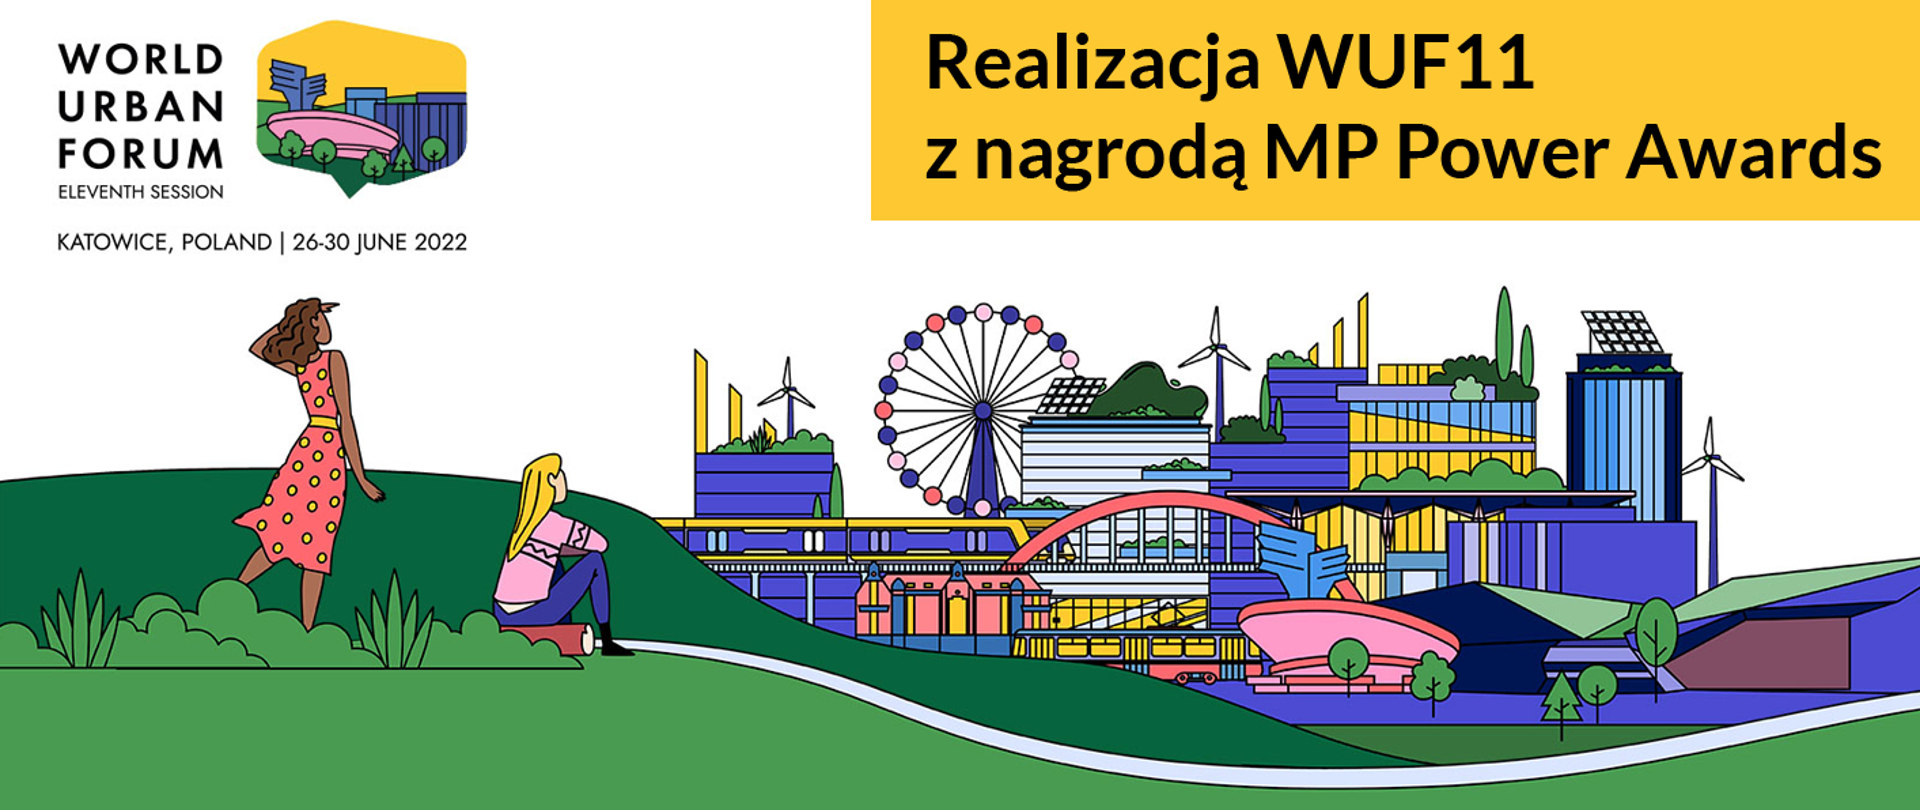 Na grafice promującej Światowe Forum Miejskie napis: "Realizacja WUF11 z nagrodą MP Power Awards